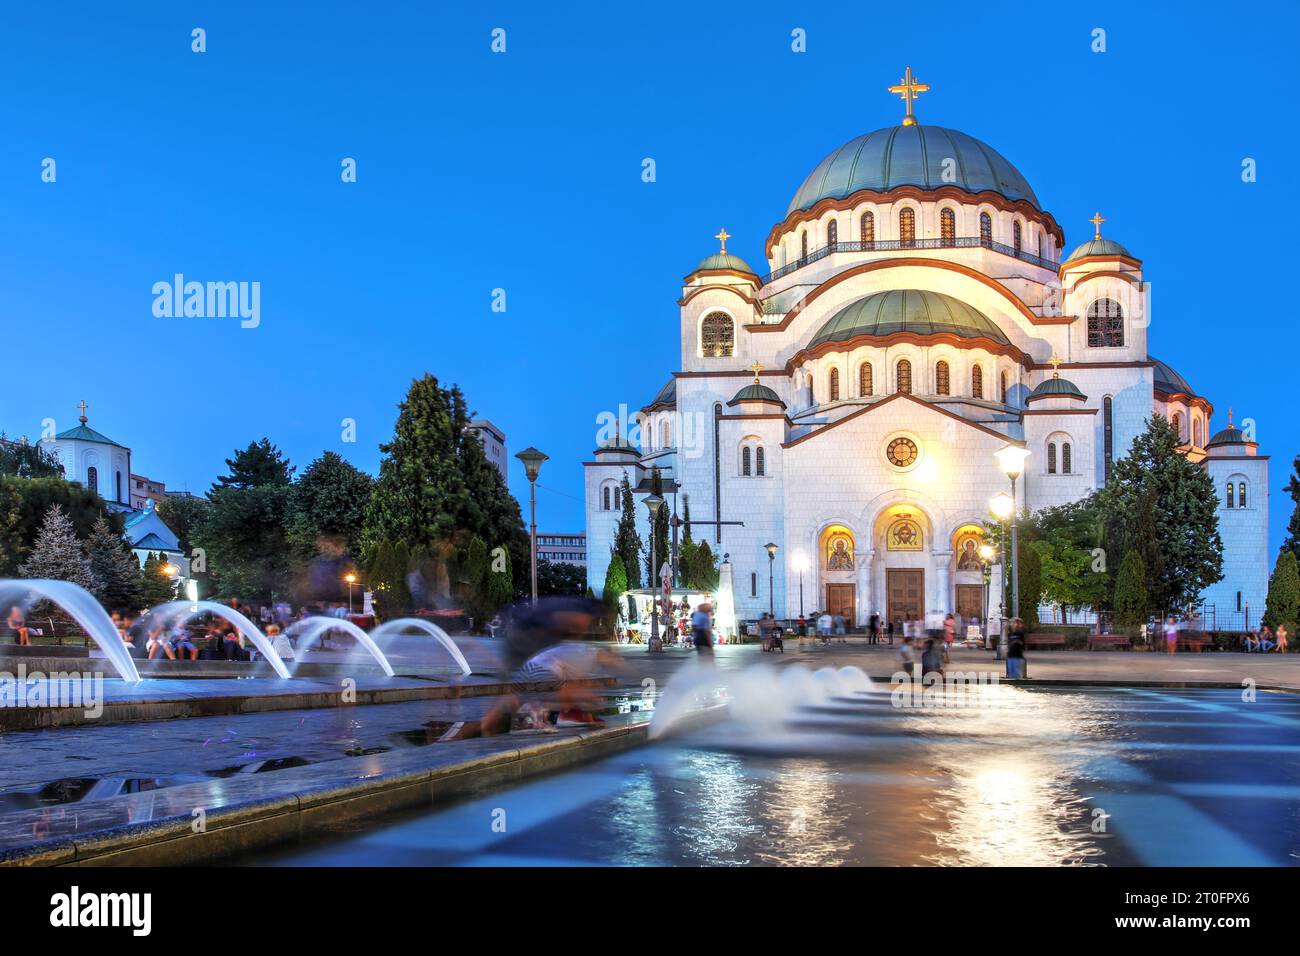 Tempel der Heiligen Sava im Zentrum von Belgrad, Serbien, erbaut zwischen 1935 und 2004, eine der größten orthodoxen Kirchen der Welt, die dem Heiligen gewidmet ist Stockfoto